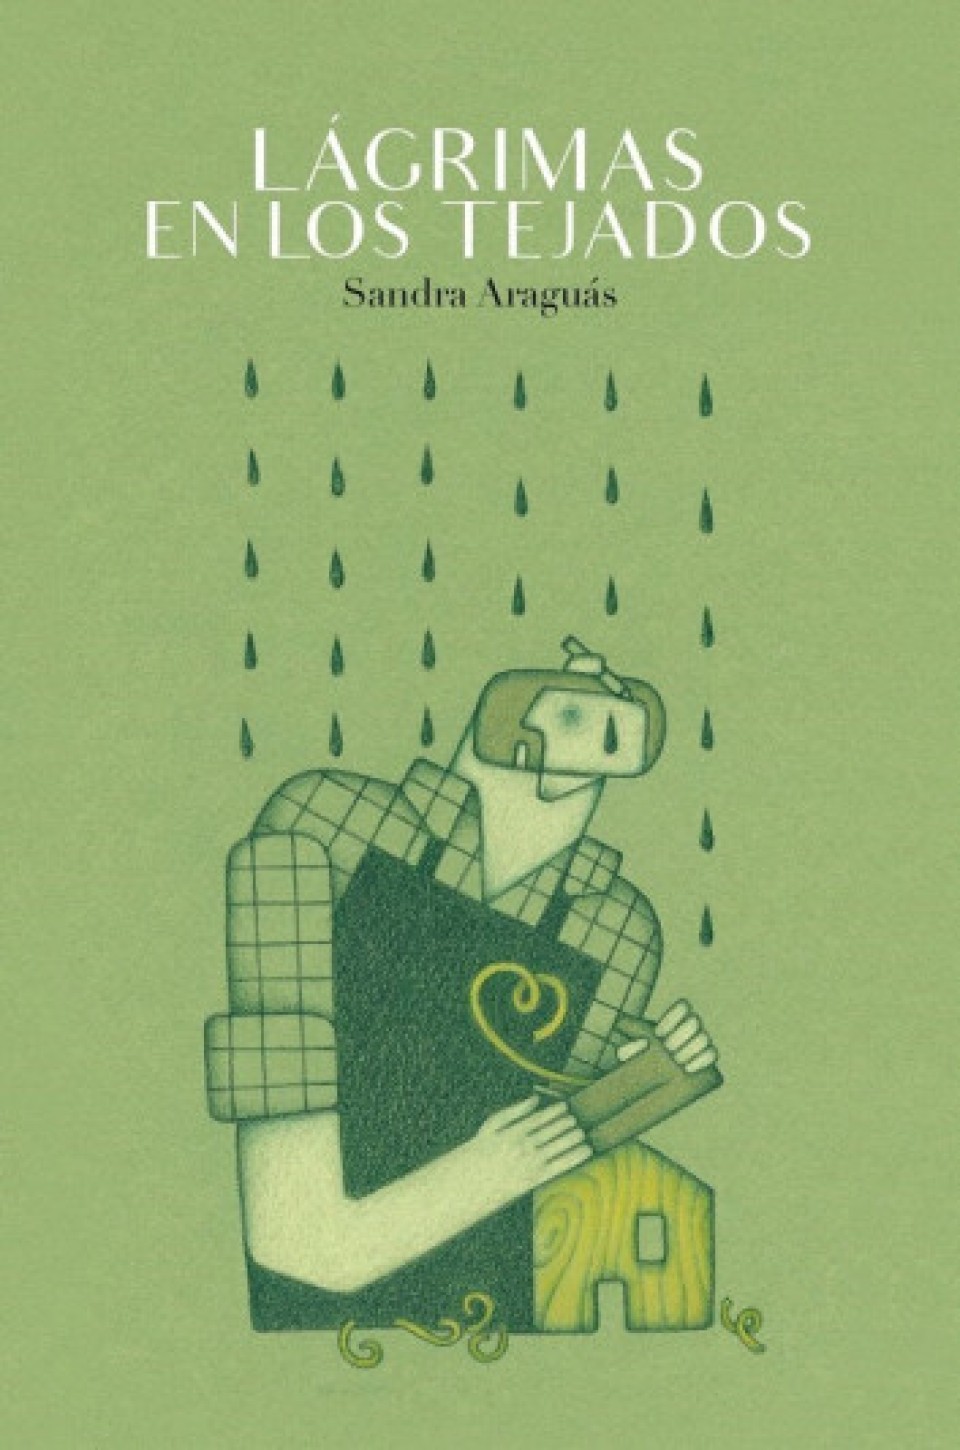 Imagen 'Lágrimas en los tejados' de Sandra Araguás